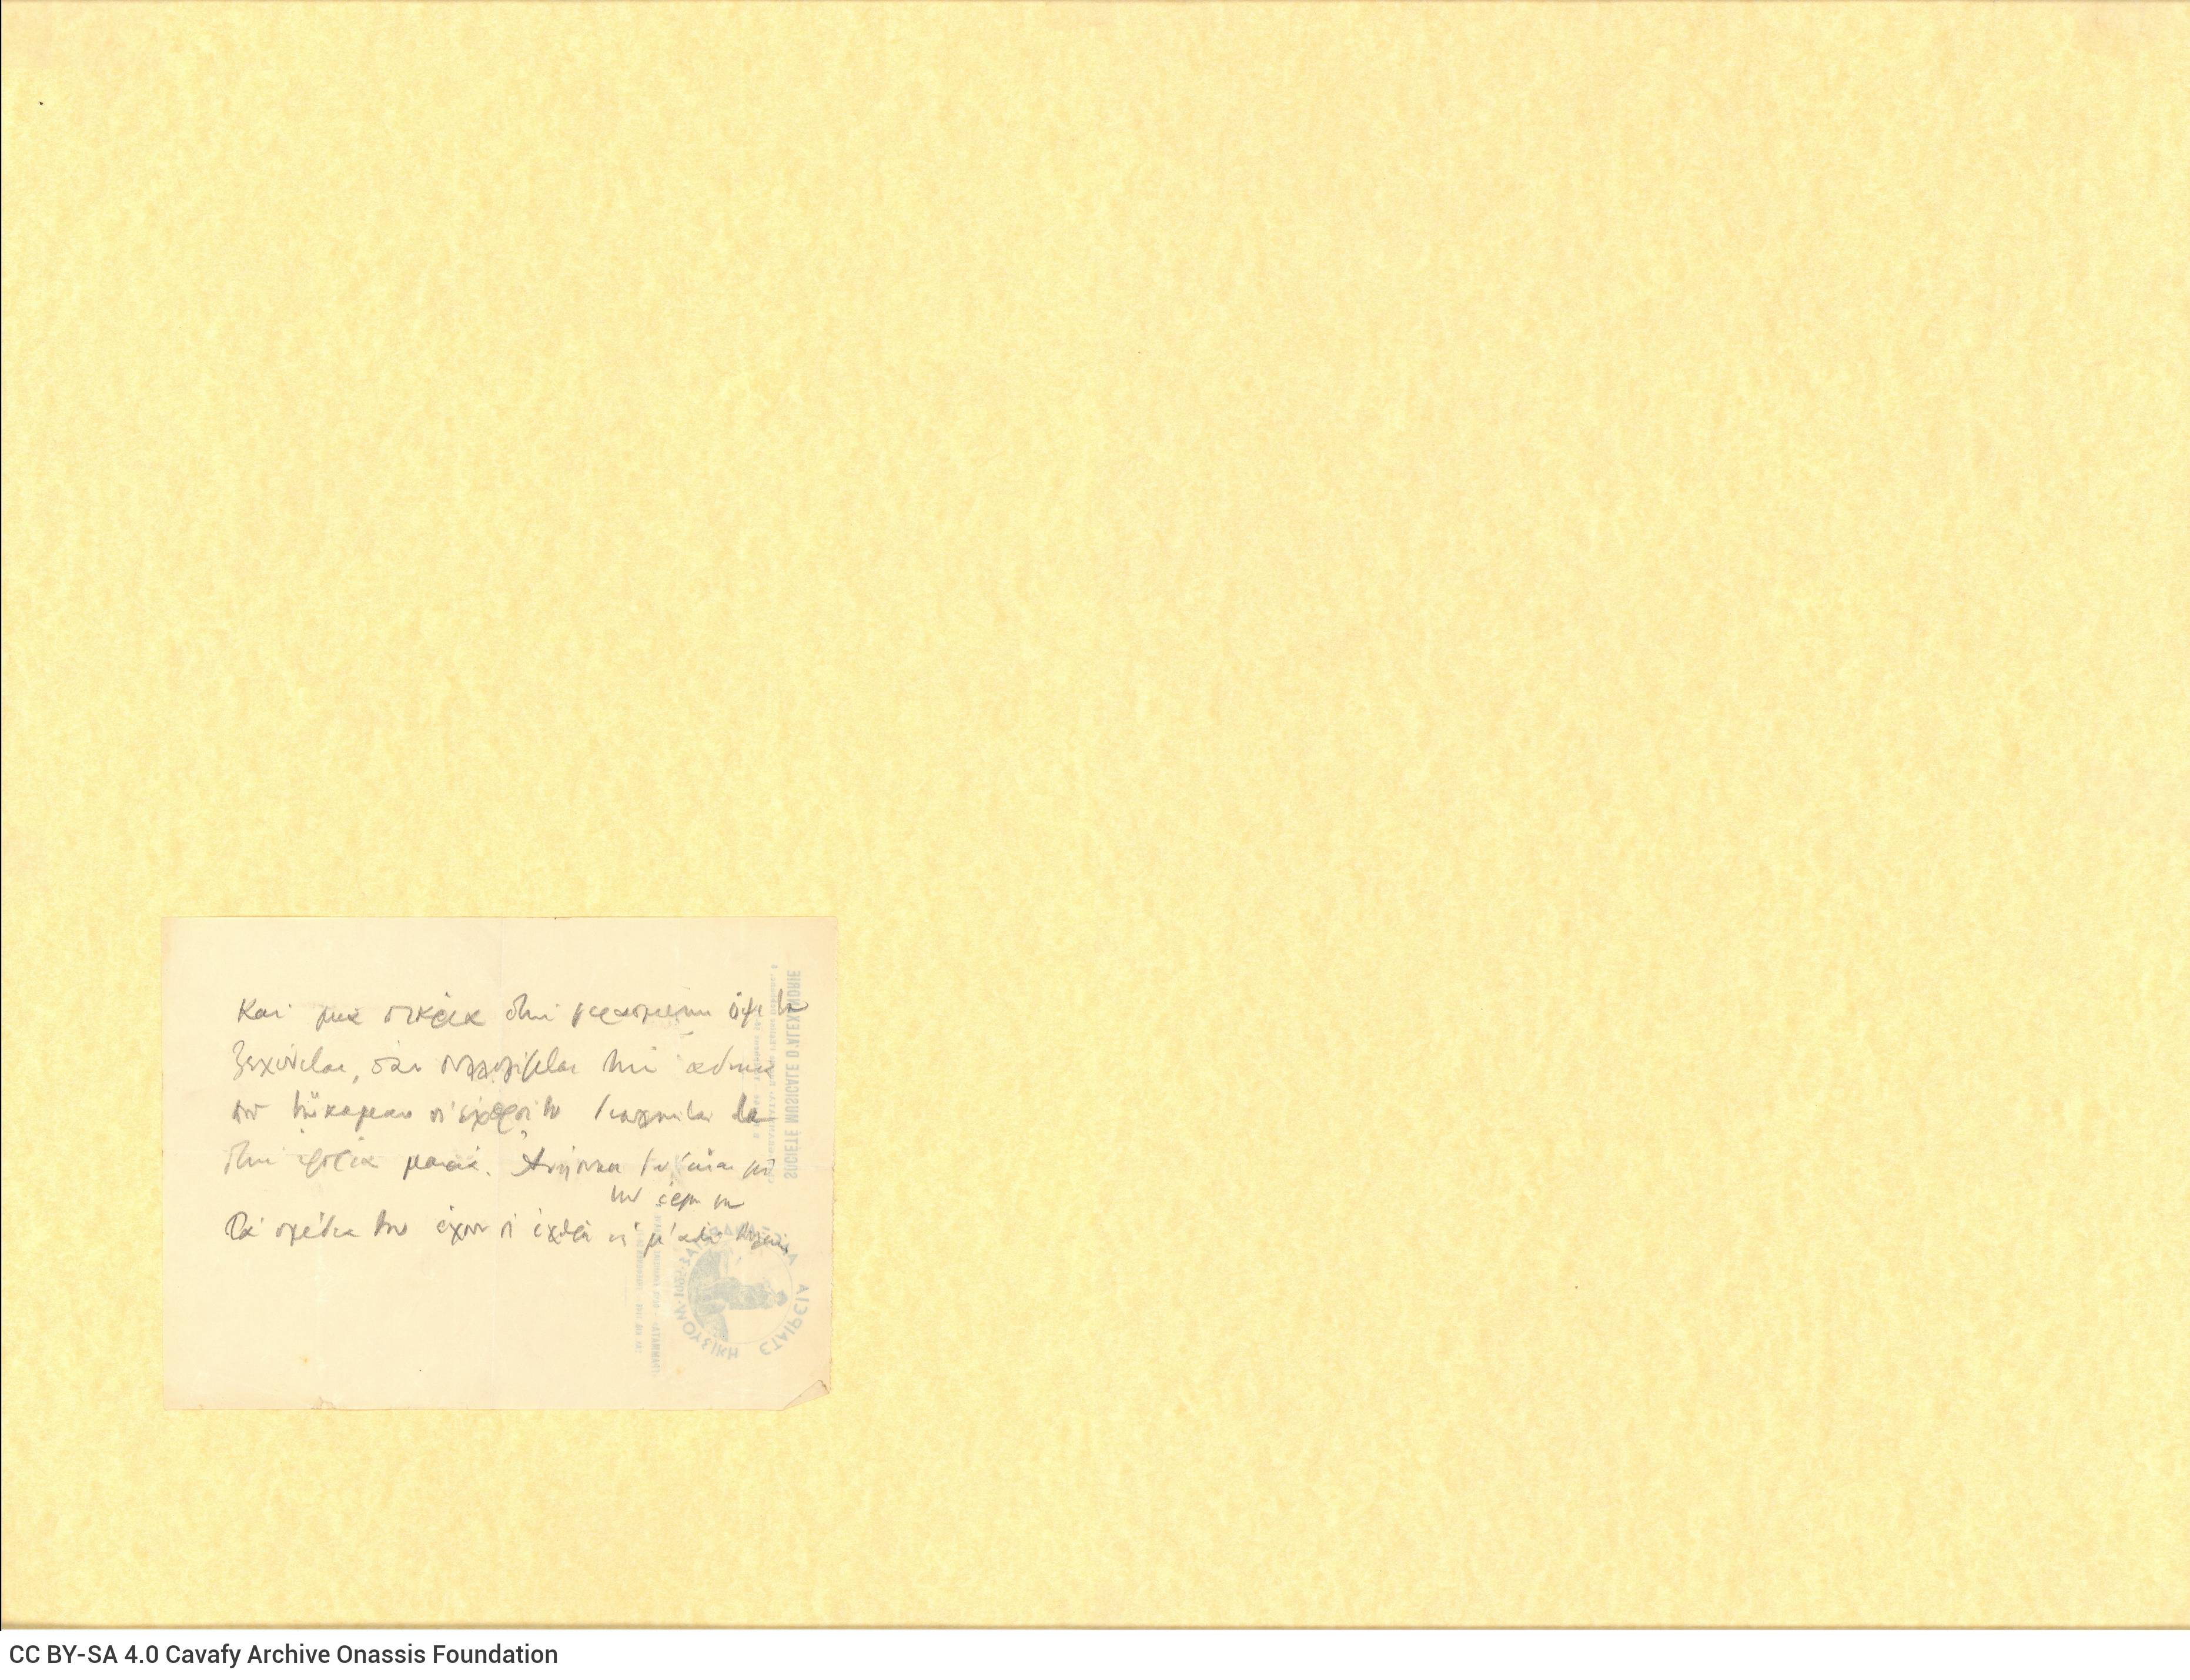 Χειρόγραφες σημειώσεις του Καβάφη στη μία όψη επιστολόχαρτου με τ�